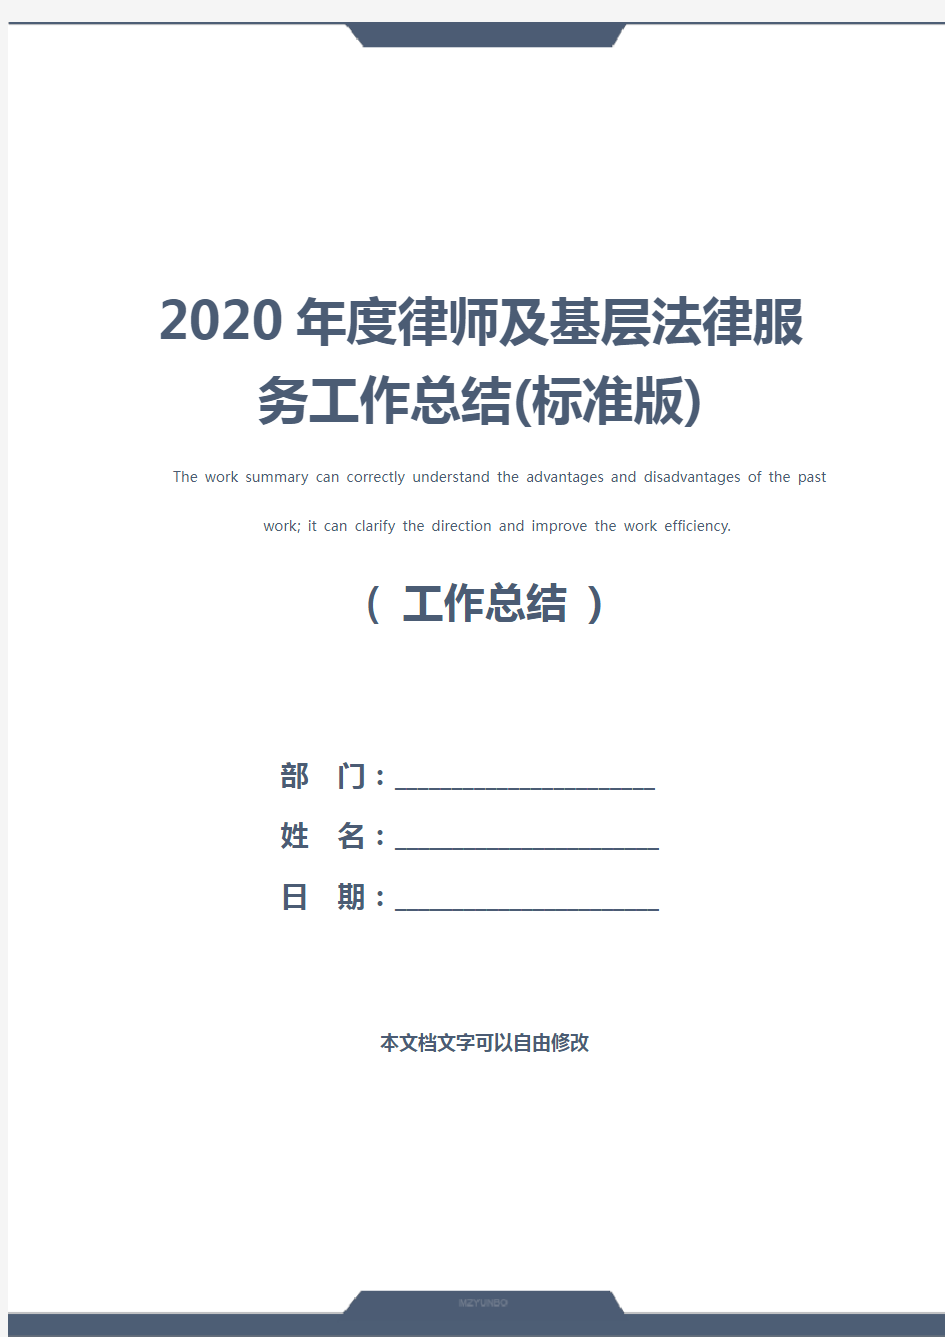 2020年度律师及基层法律服务工作总结(标准版)